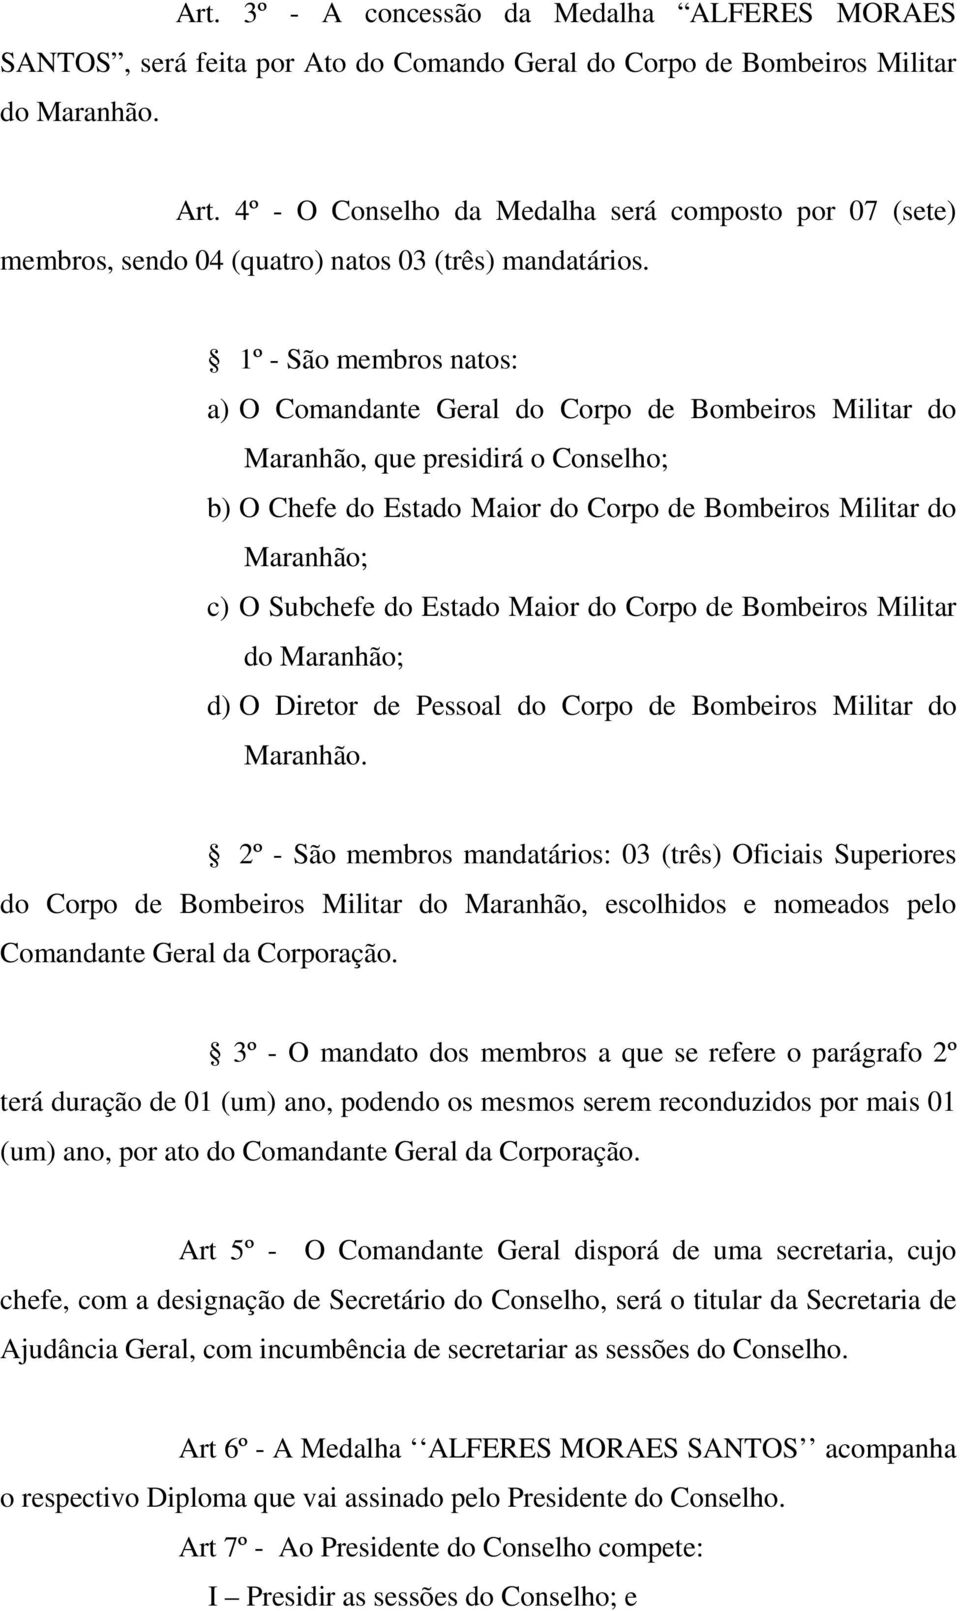 1º - São membros natos: a) O Comandante Geral do Corpo de Bombeiros Militar do Maranhão, que presidirá o Conselho; b) O Chefe do Estado Maior do Corpo de Bombeiros Militar do Maranhão; c) O Subchefe